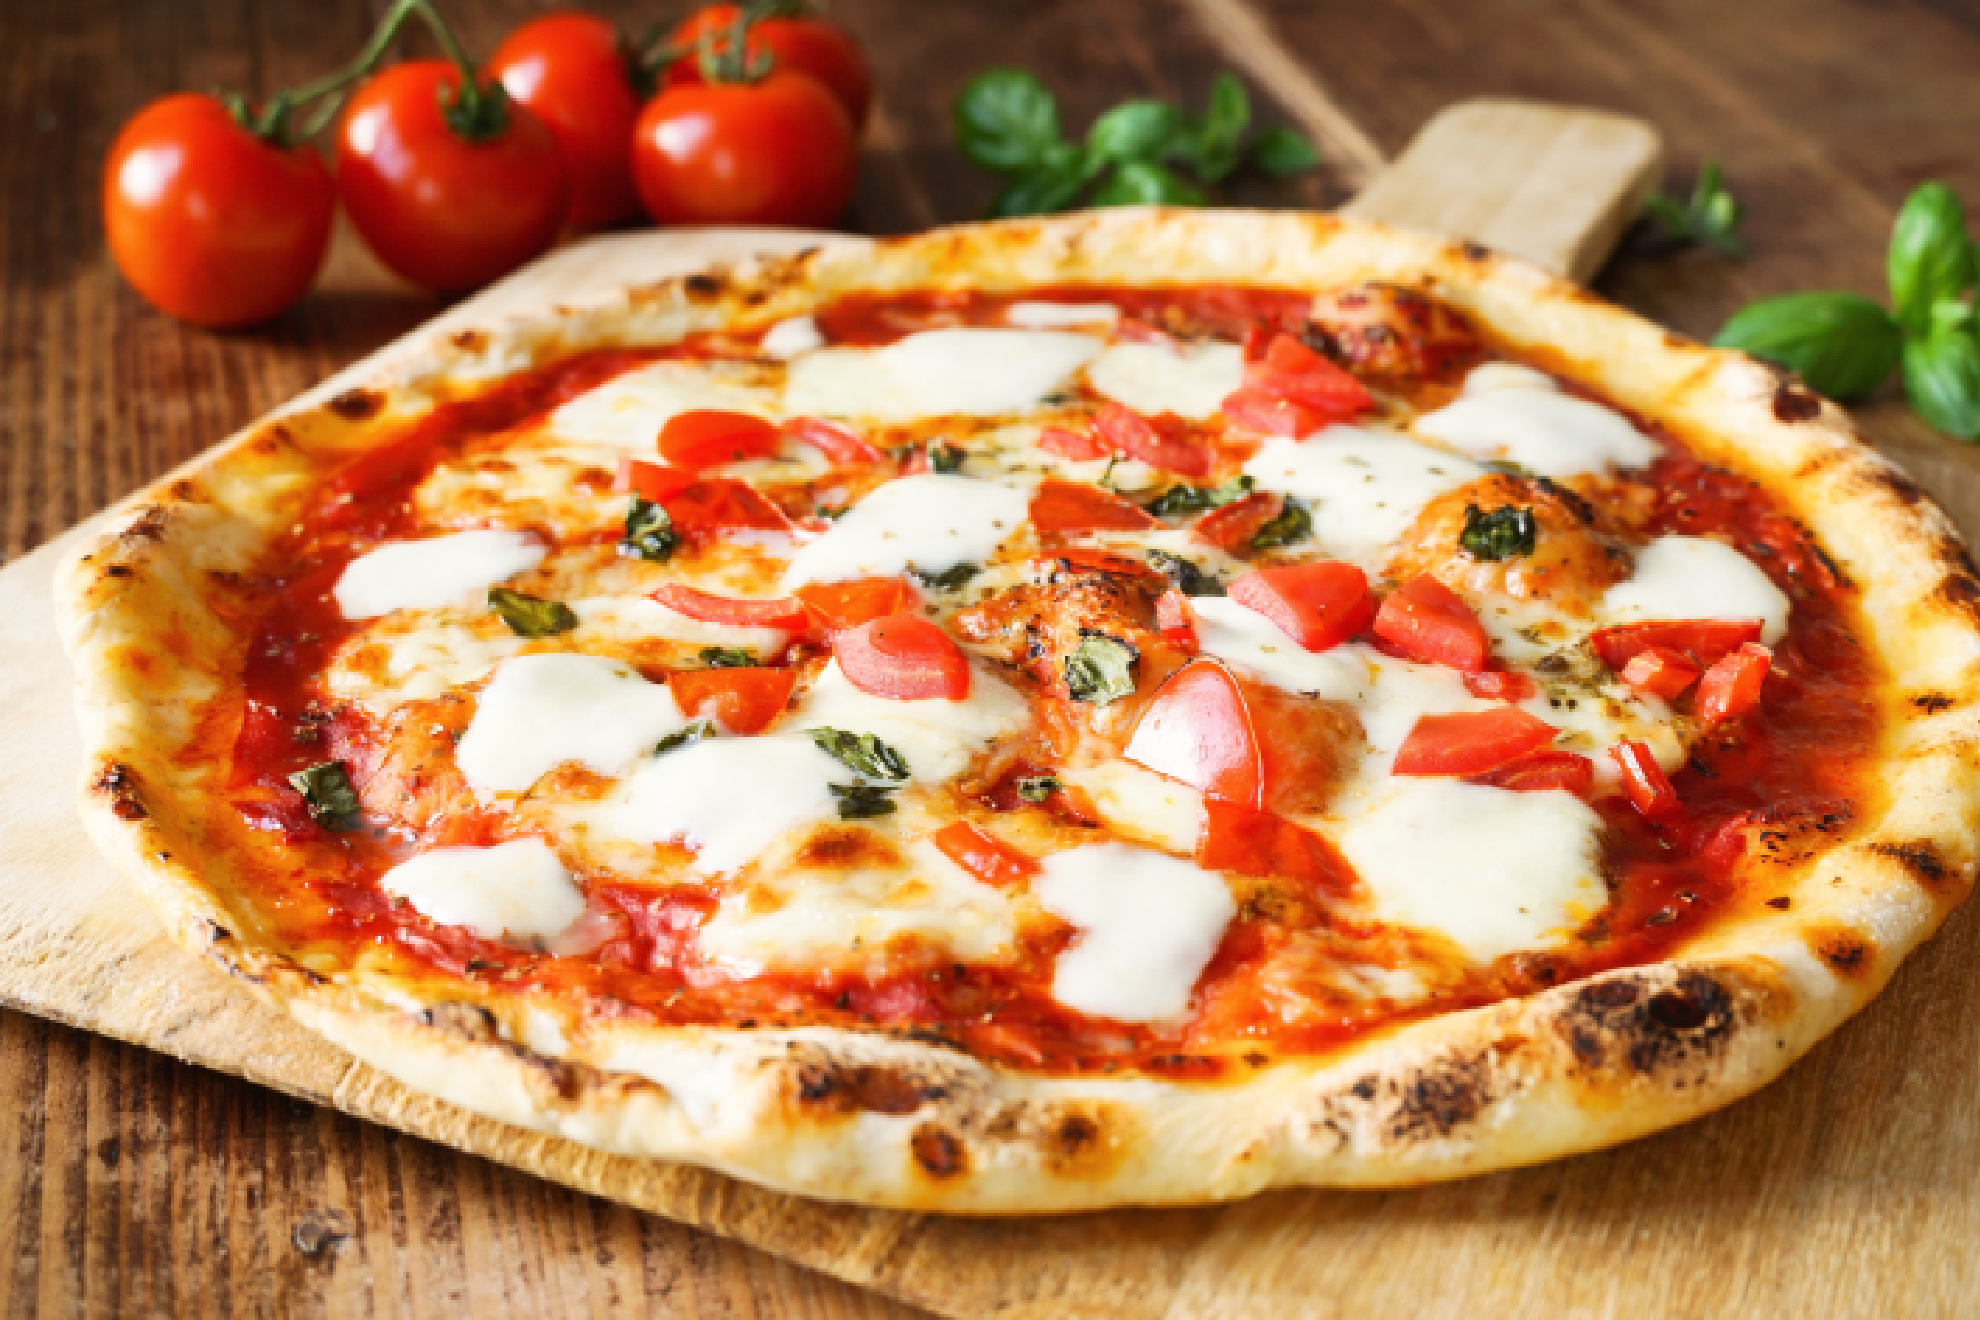 Quin invent la pizza con pia y otras curiosidades de este plato italiano que quizs no conocas